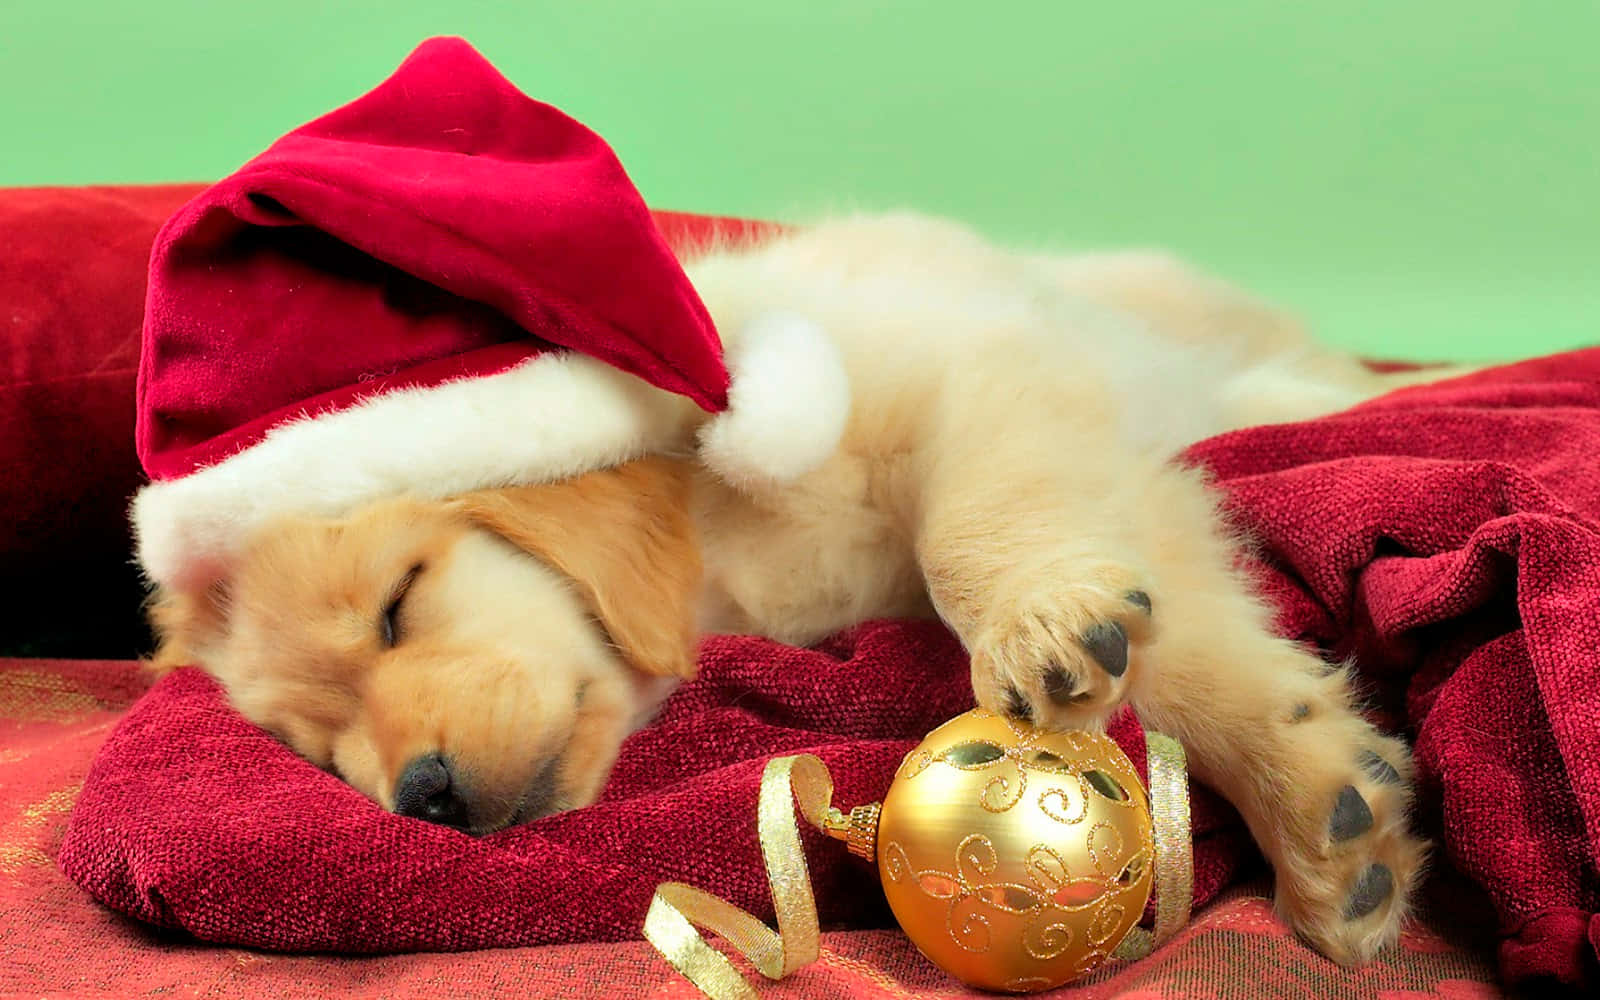 Imagende Un Perro Durmiendo Con Sombrero De Santa.